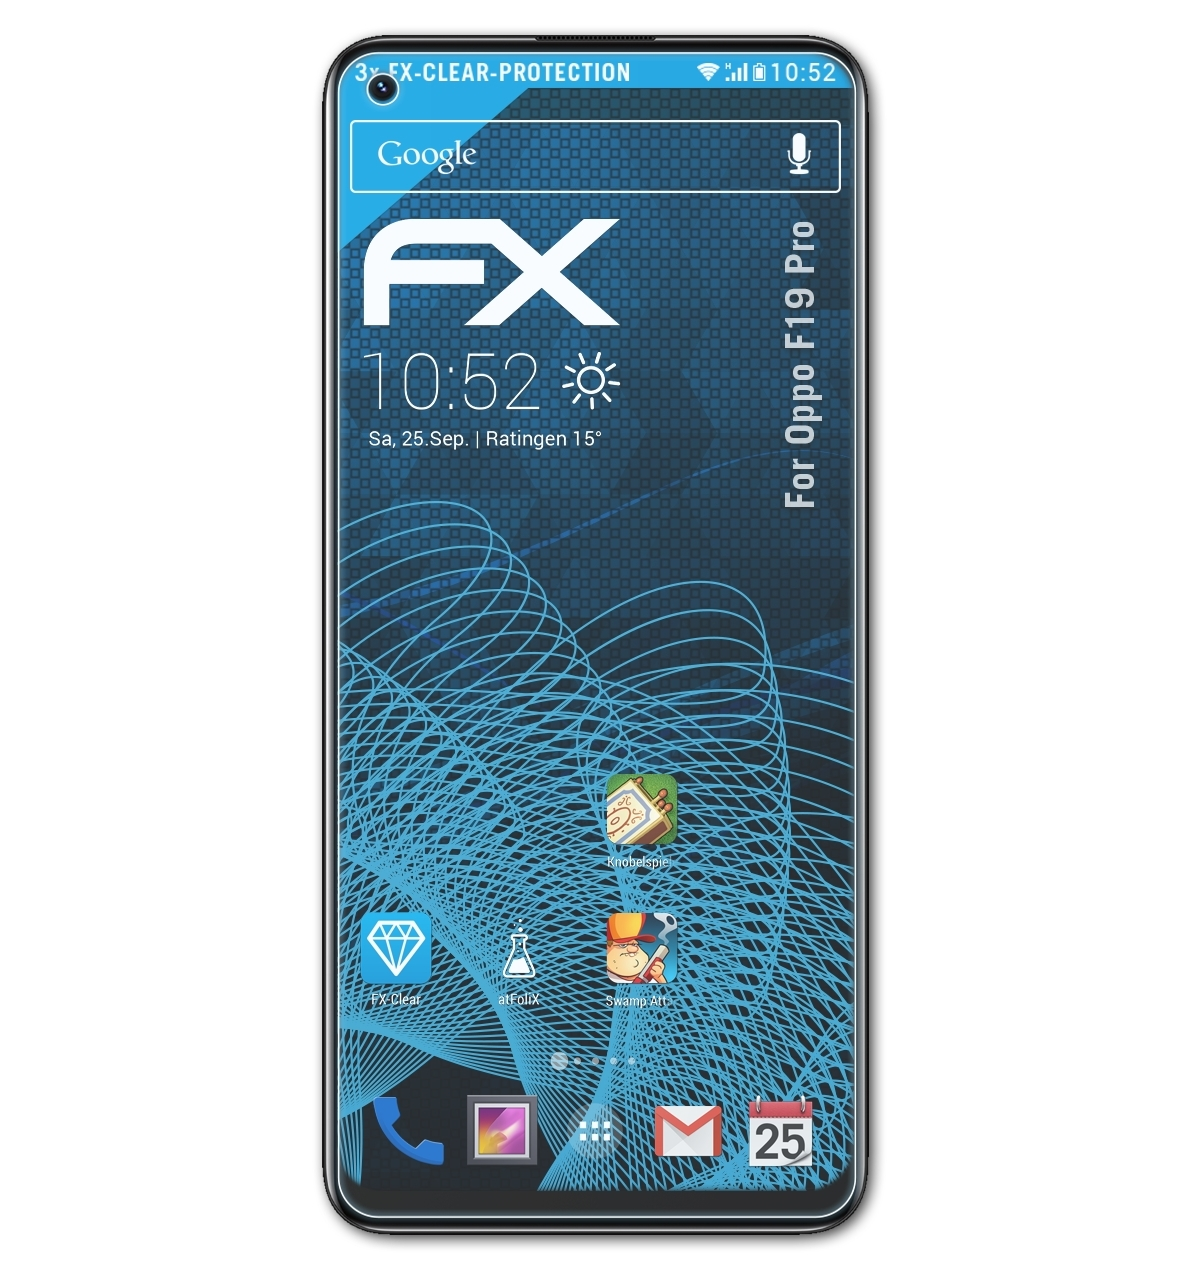 Displayschutz(für FX-Clear Pro) F19 3x Oppo ATFOLIX